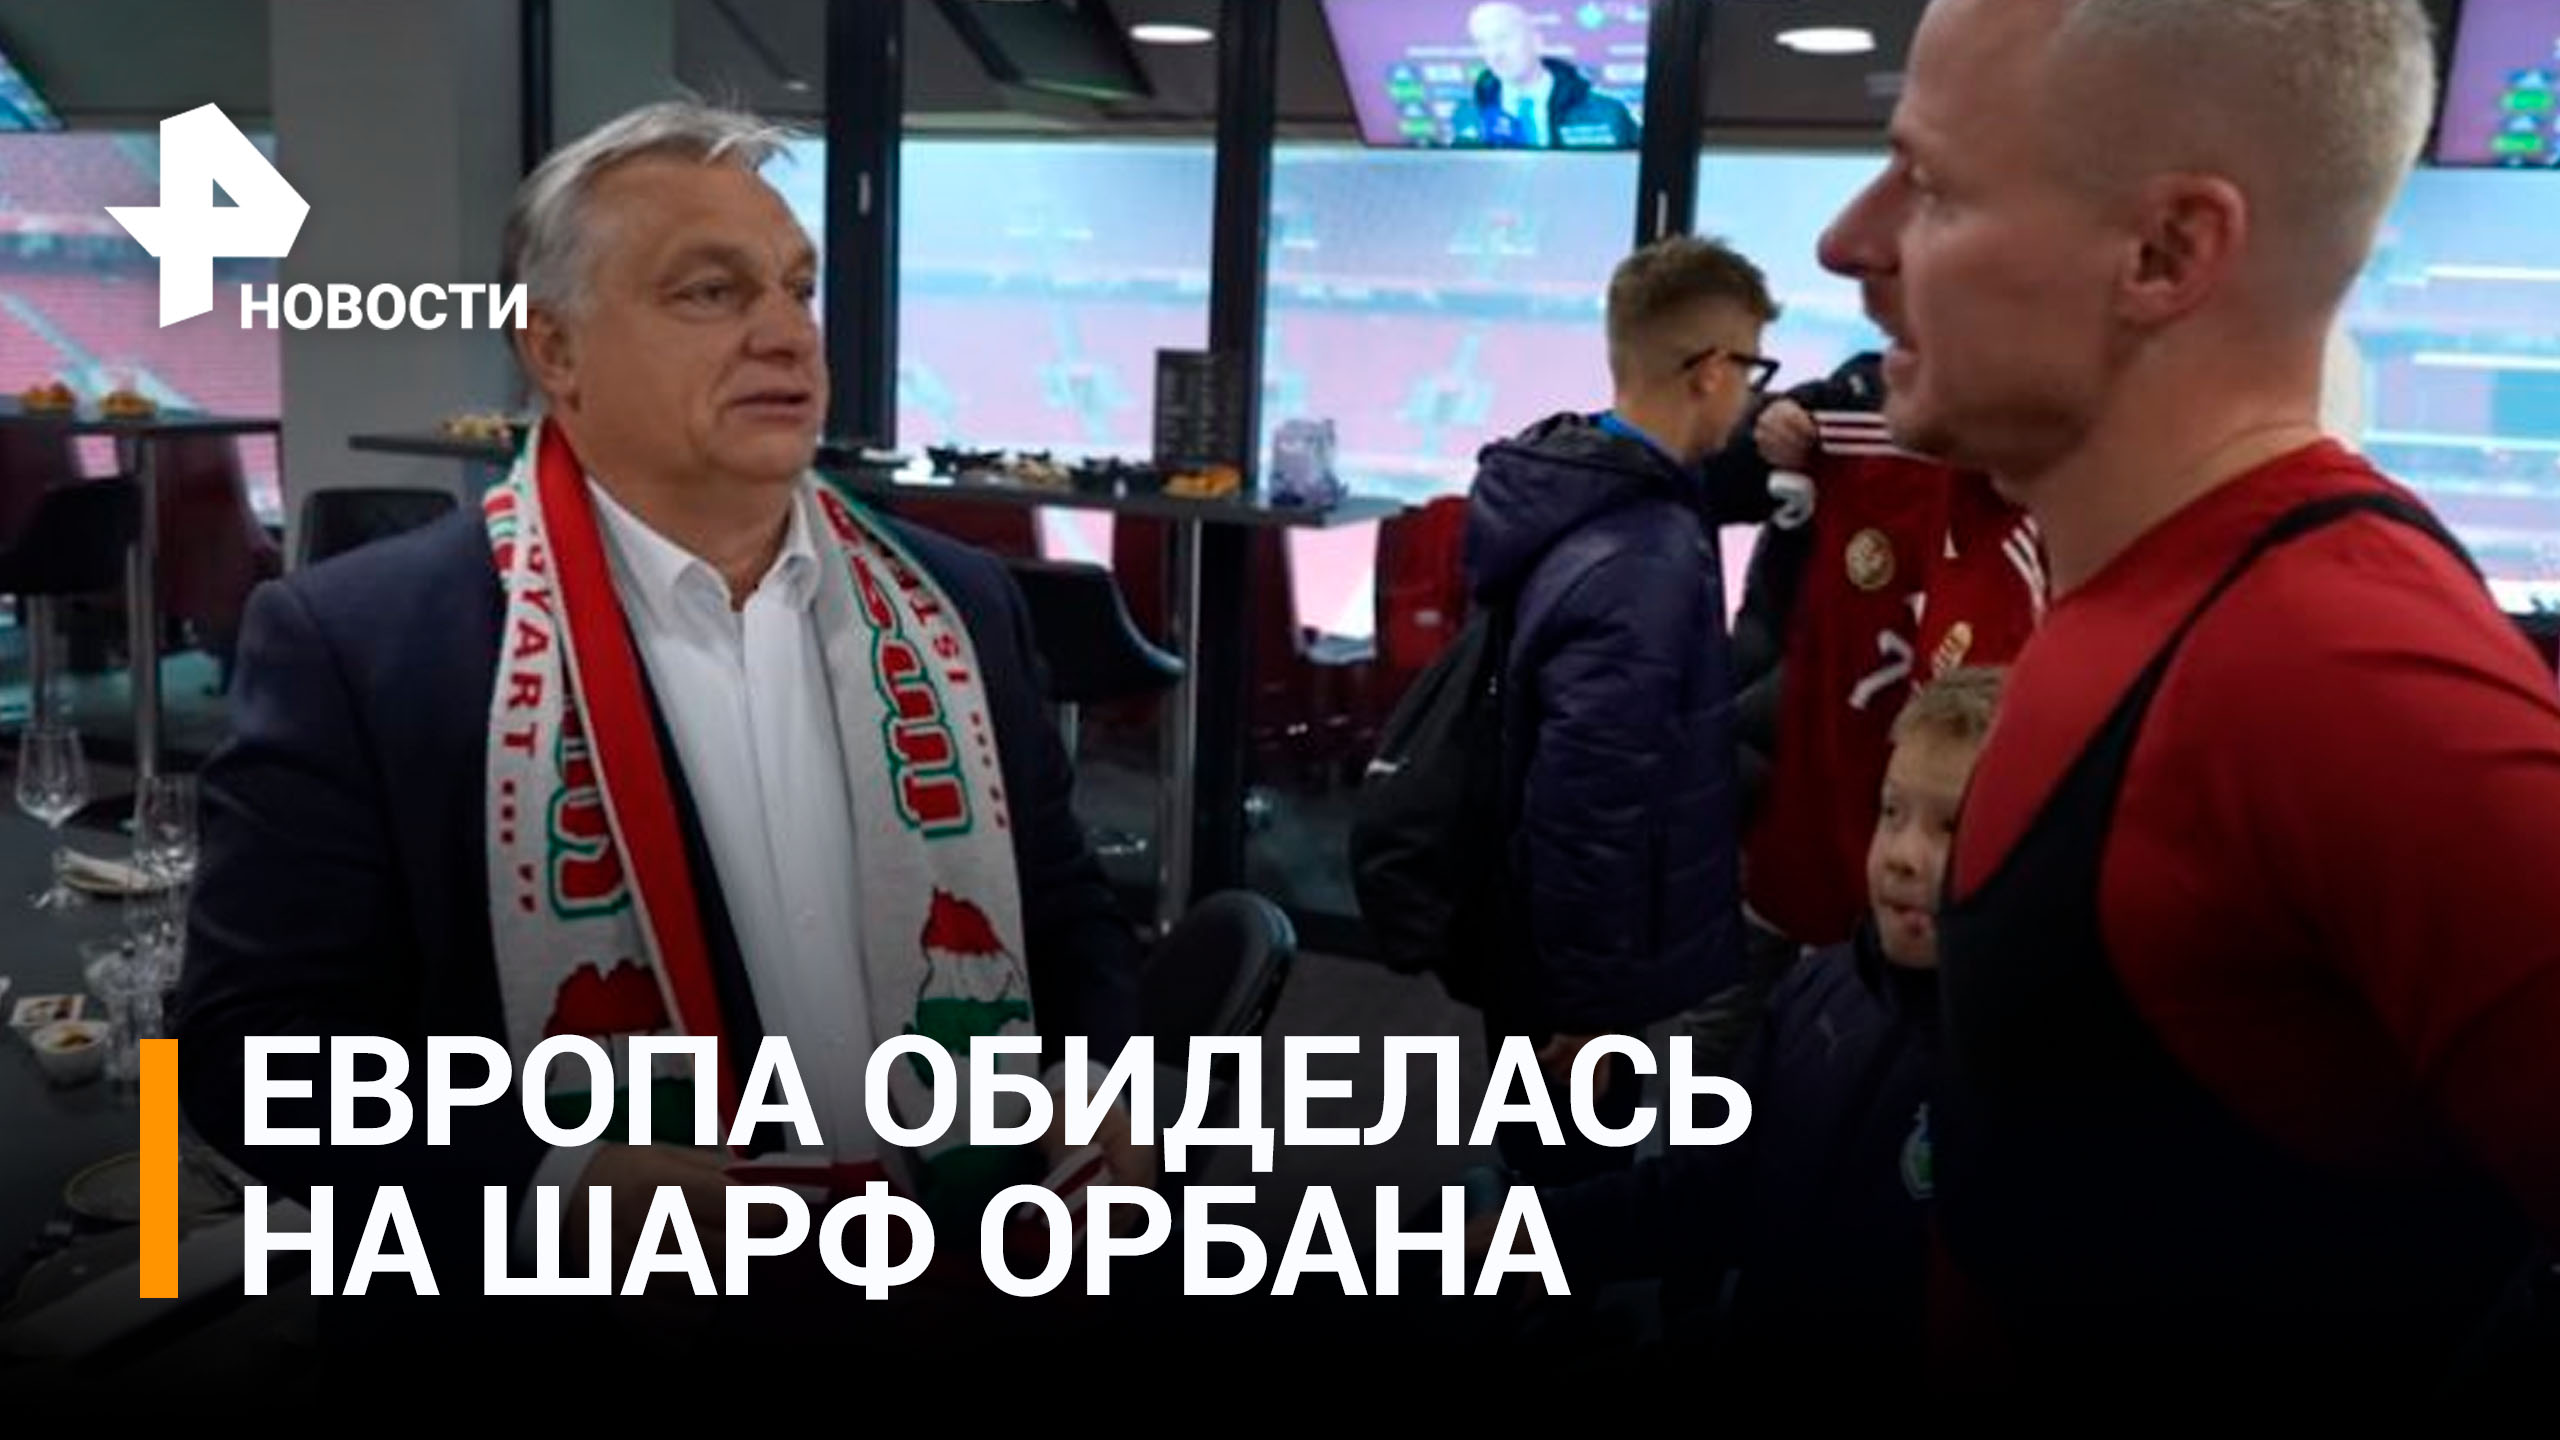 Шарф Орбана с "Великой Венгрией" переполошил Украину / РЕН Новости